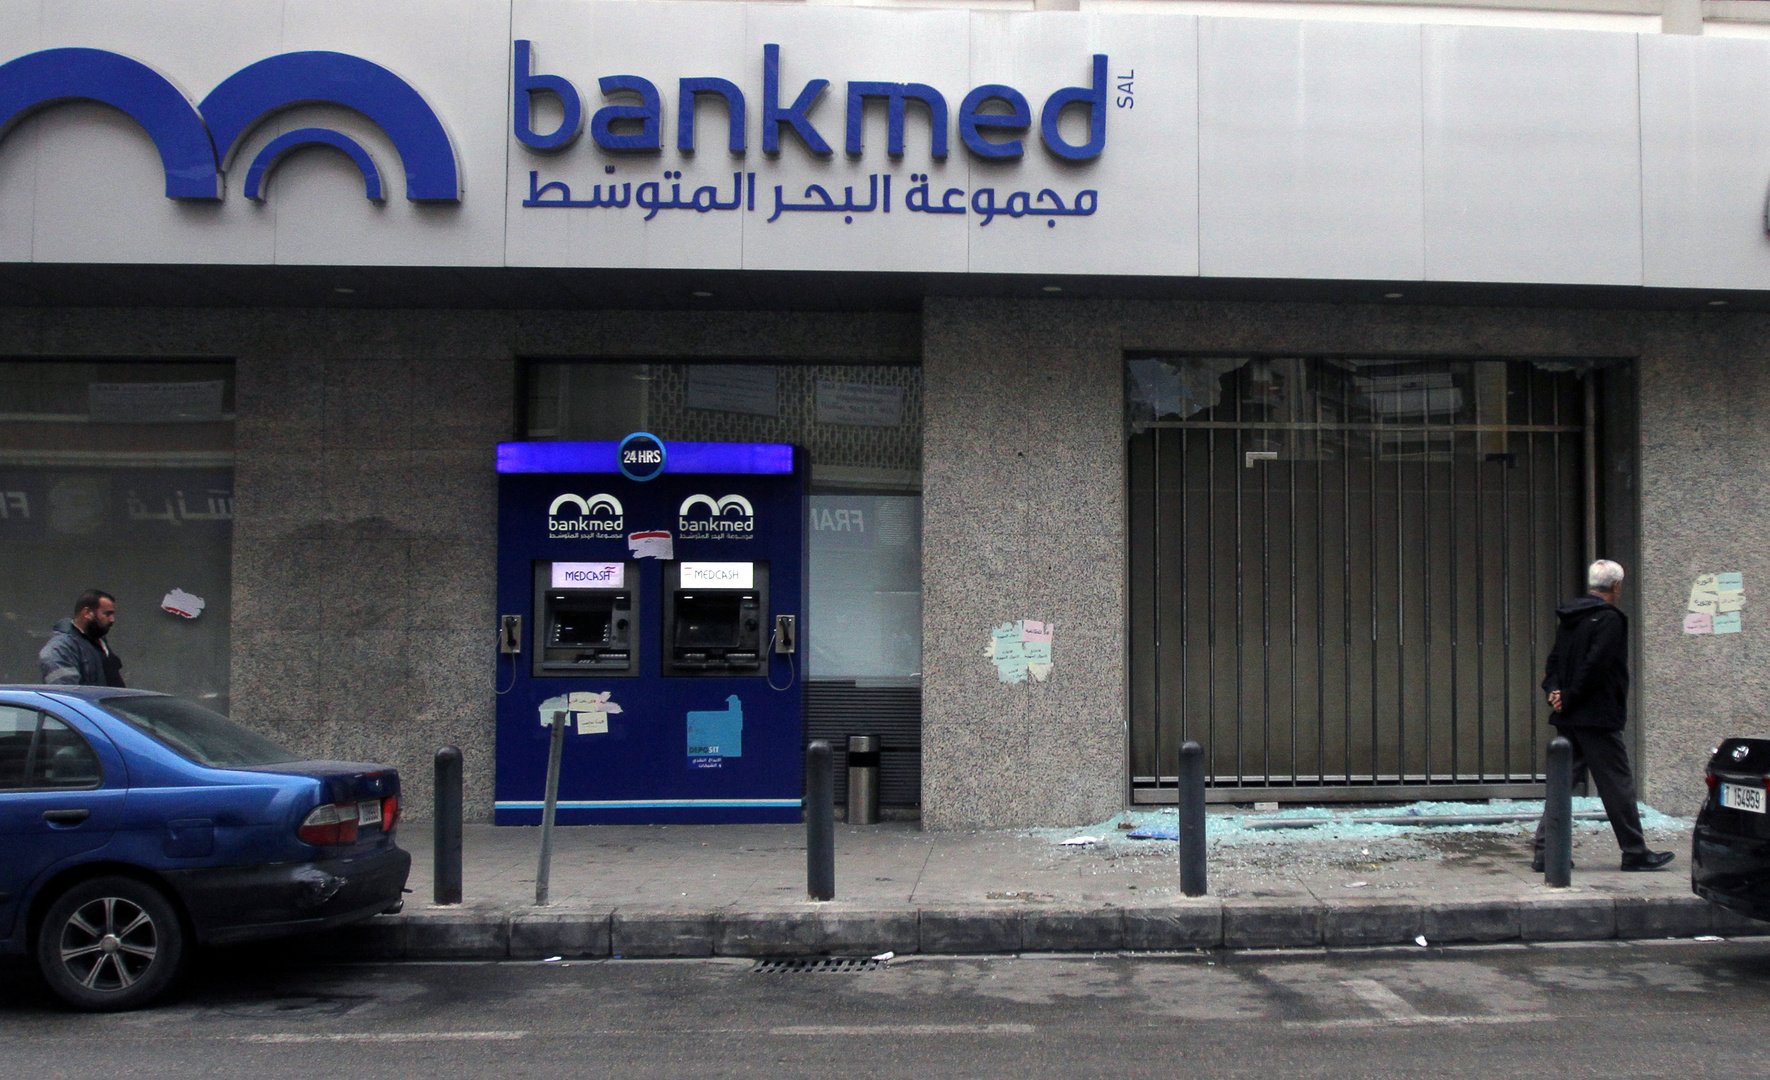 اللبنانيون سحبوا مليارات الدولارات من البنوك وأودعوها في بيوتهم